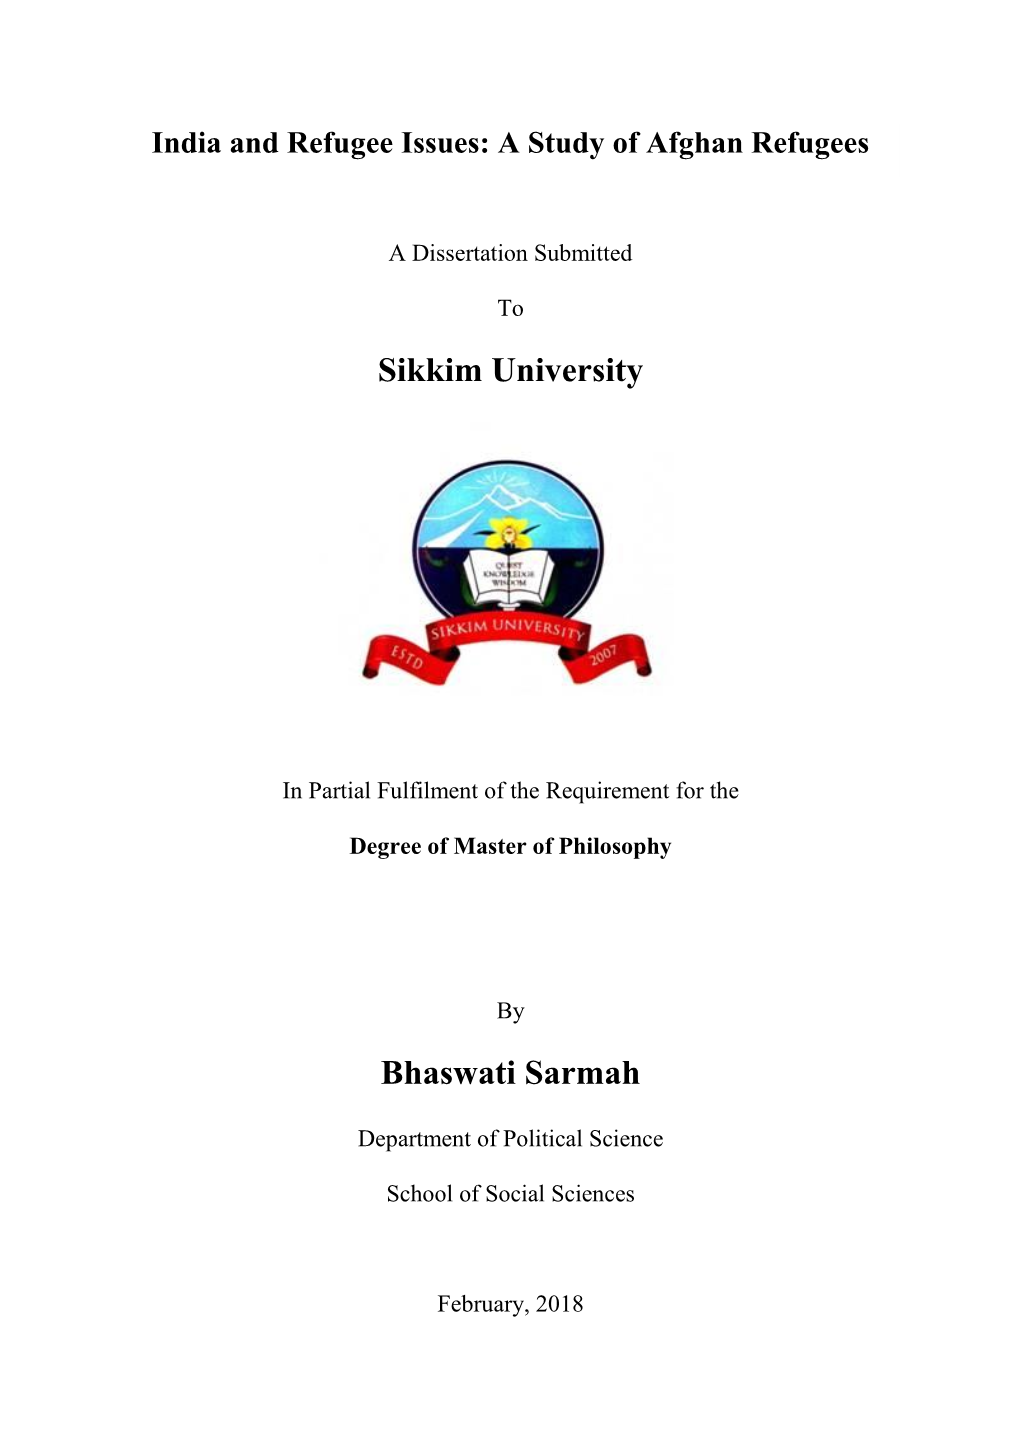 Sikkim University Bhaswati Sarmah